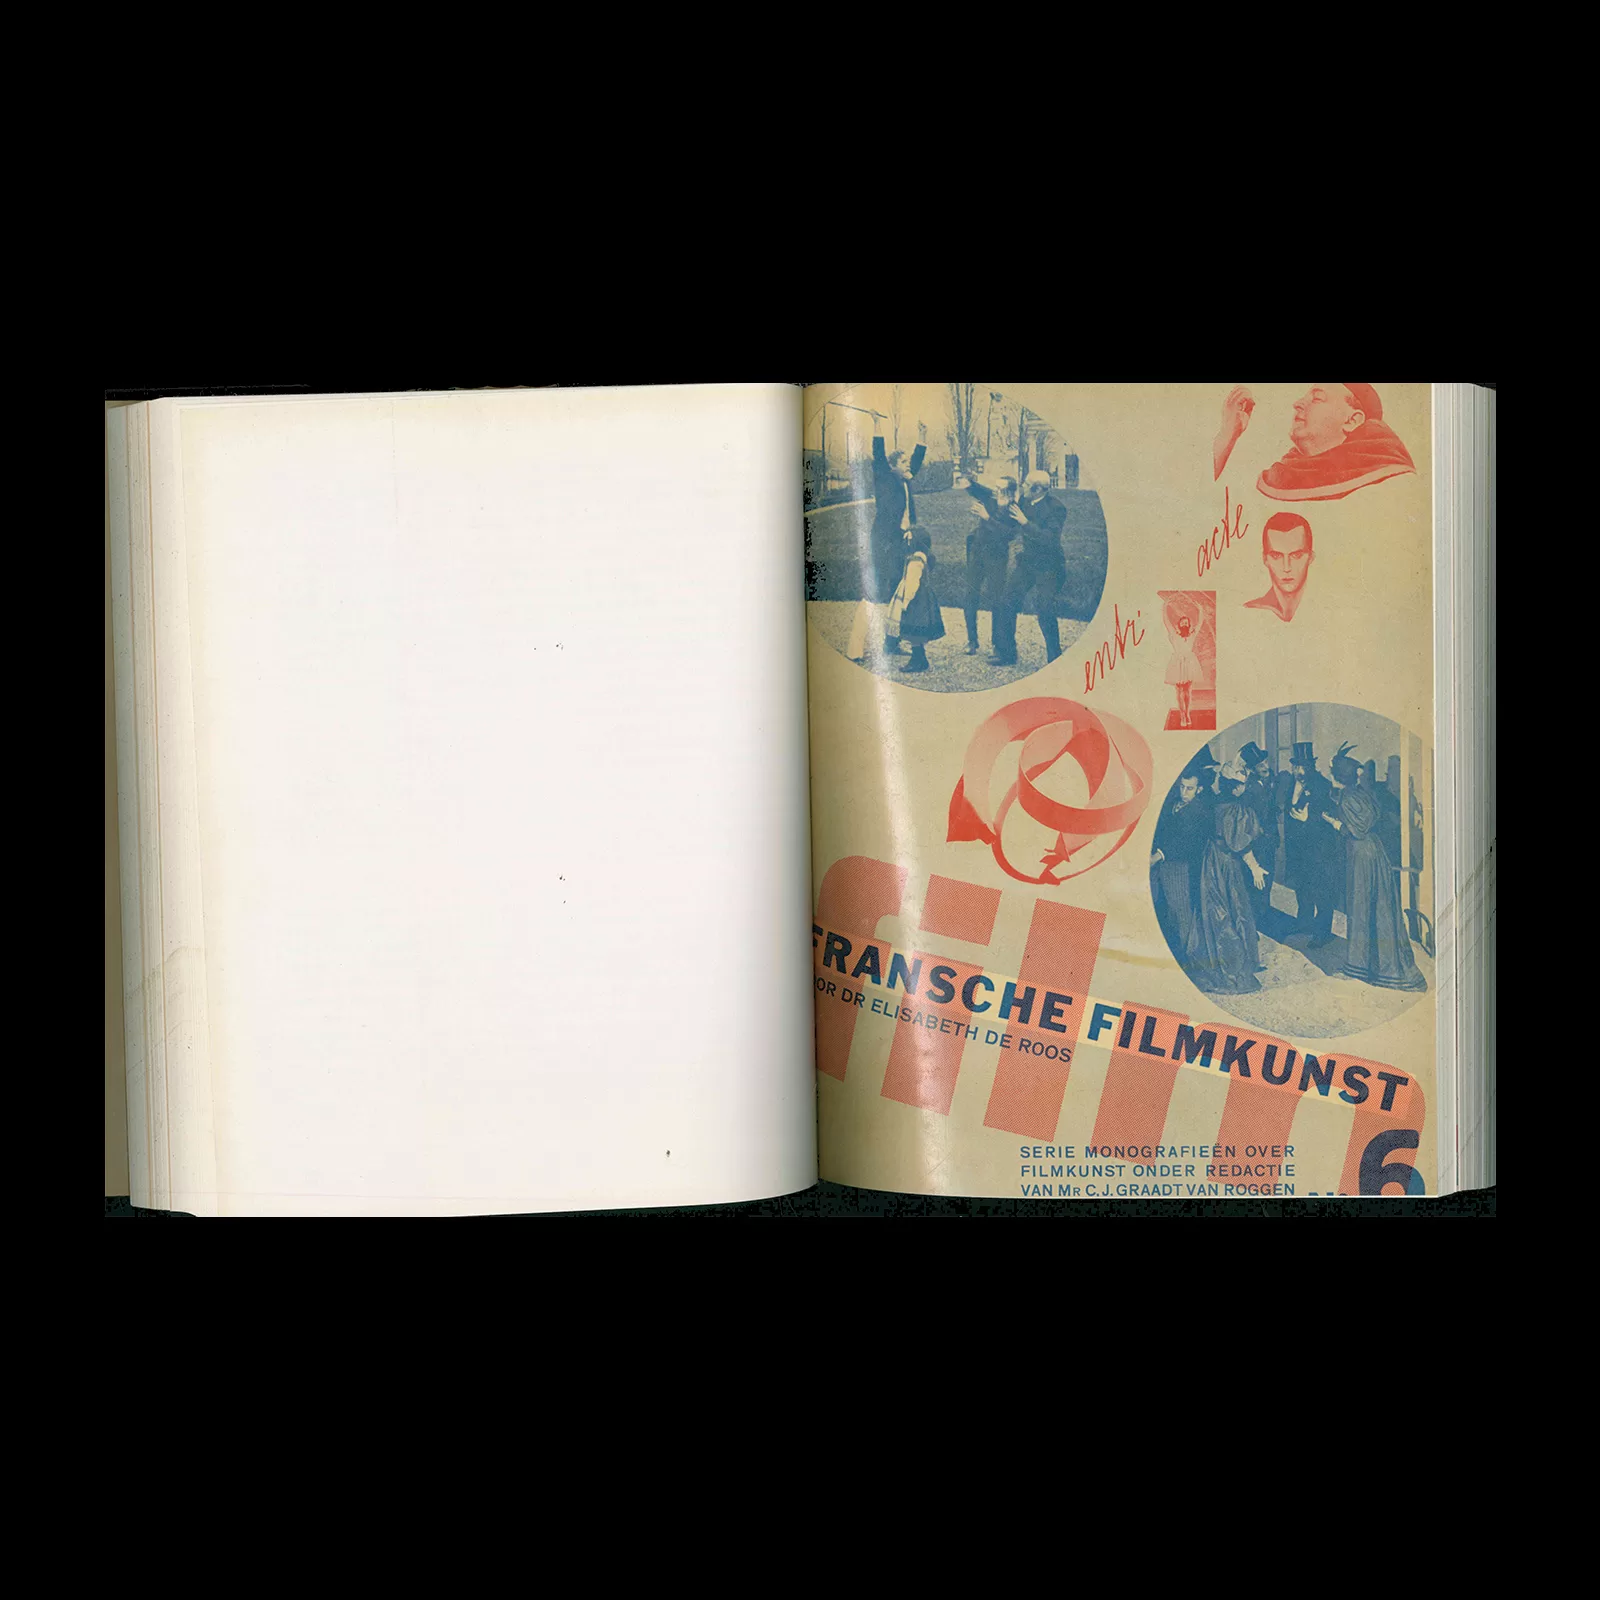 Film, Monografieën over filmkunst, 1-10, Uitgeversmaatschappij, 1931 – 1933. Designed by Piet Zwart